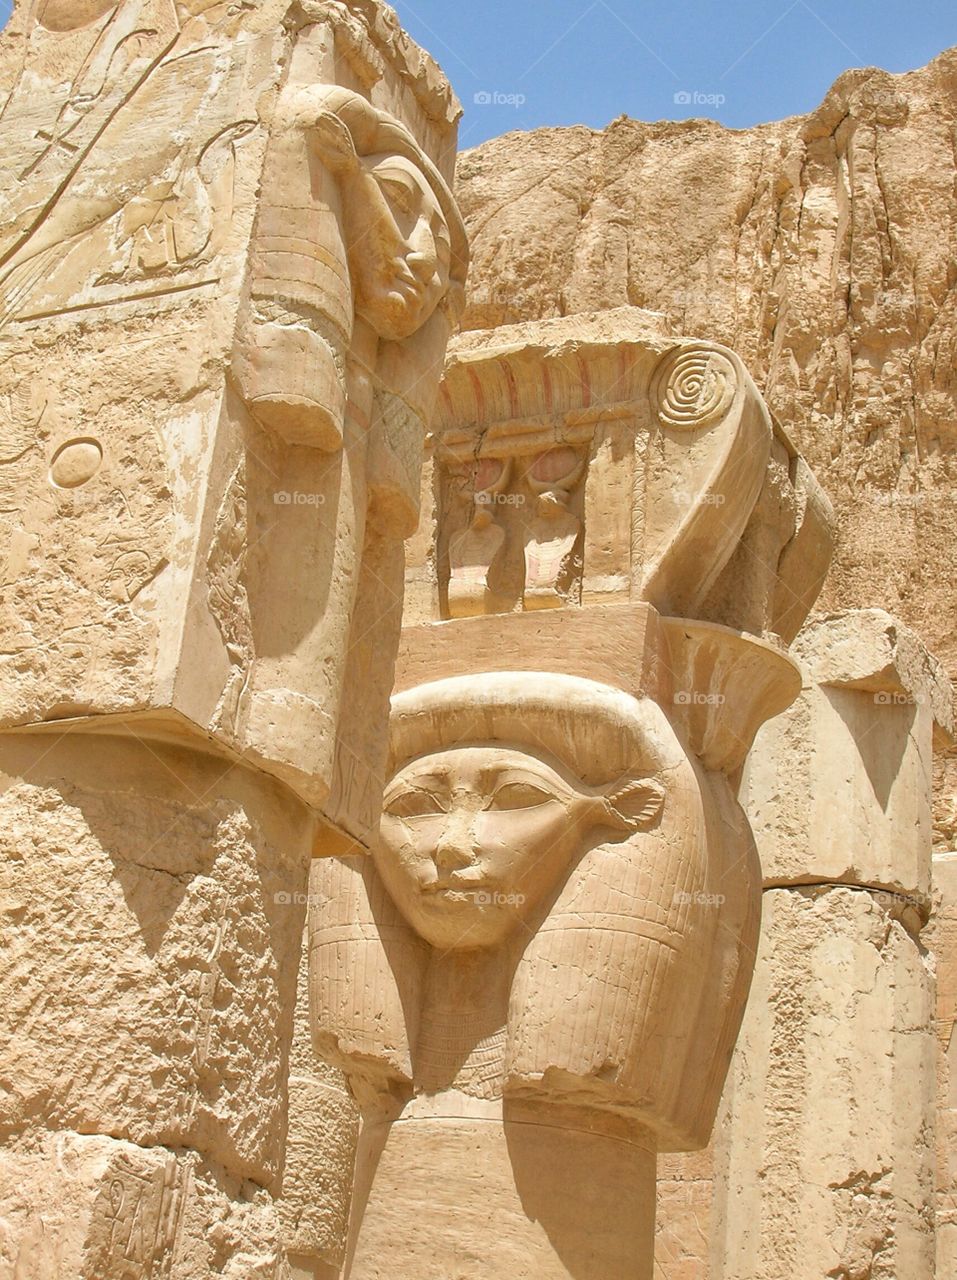 Queen Hatshepsut's Temple